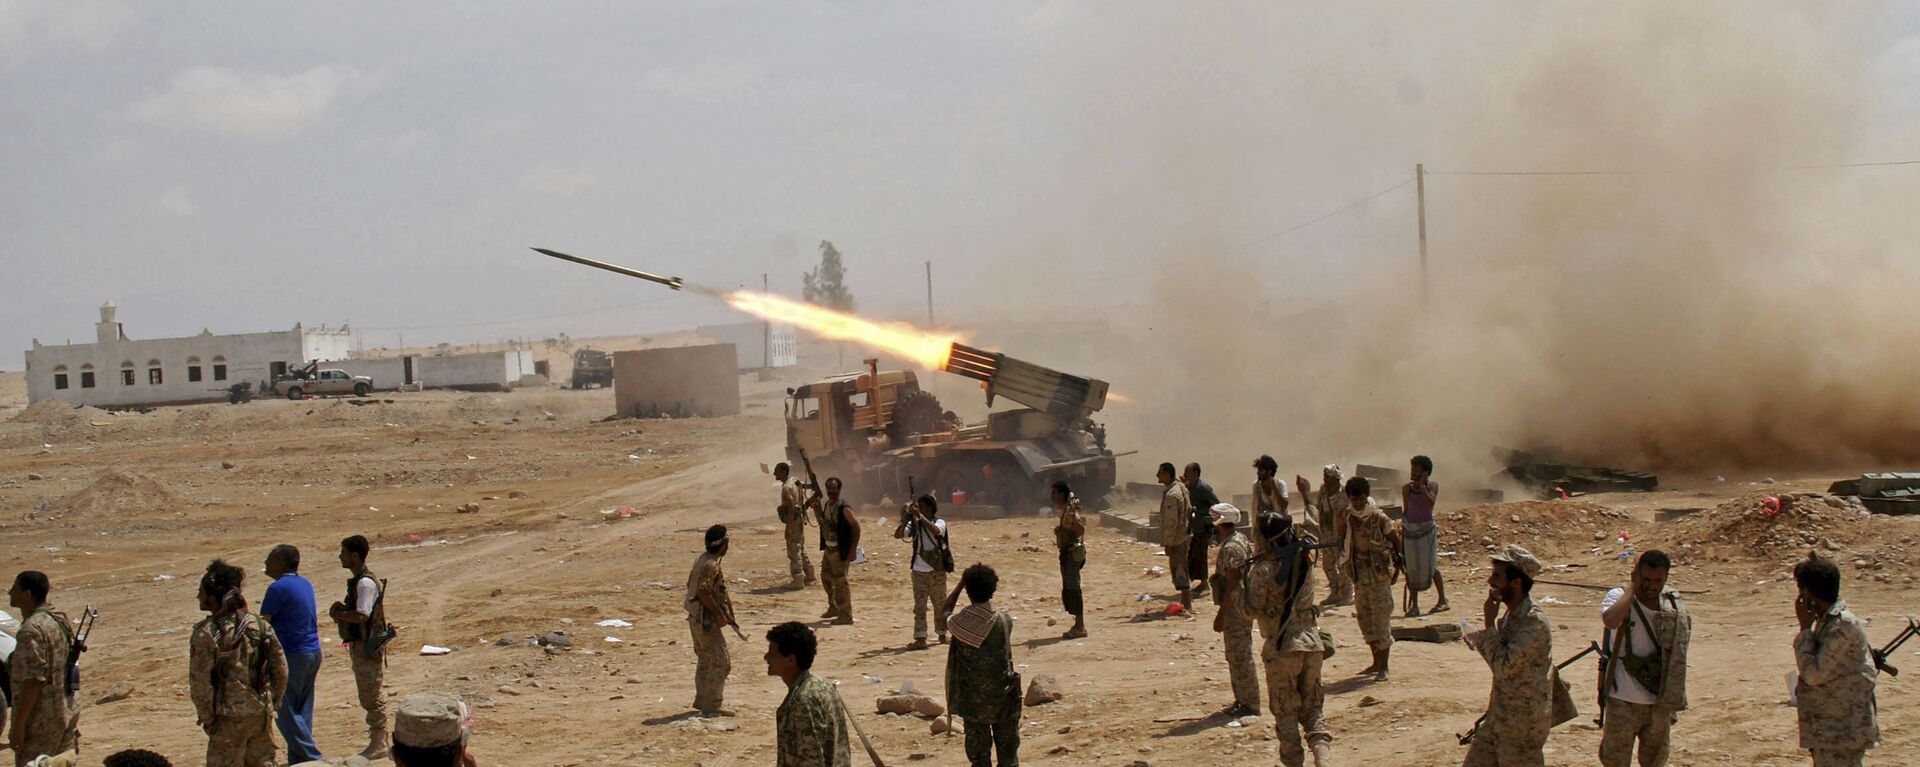 جنود من الجيش اليمني يطلقون صواريخ - سبوتنيك عربي, 1920, 11.11.2021